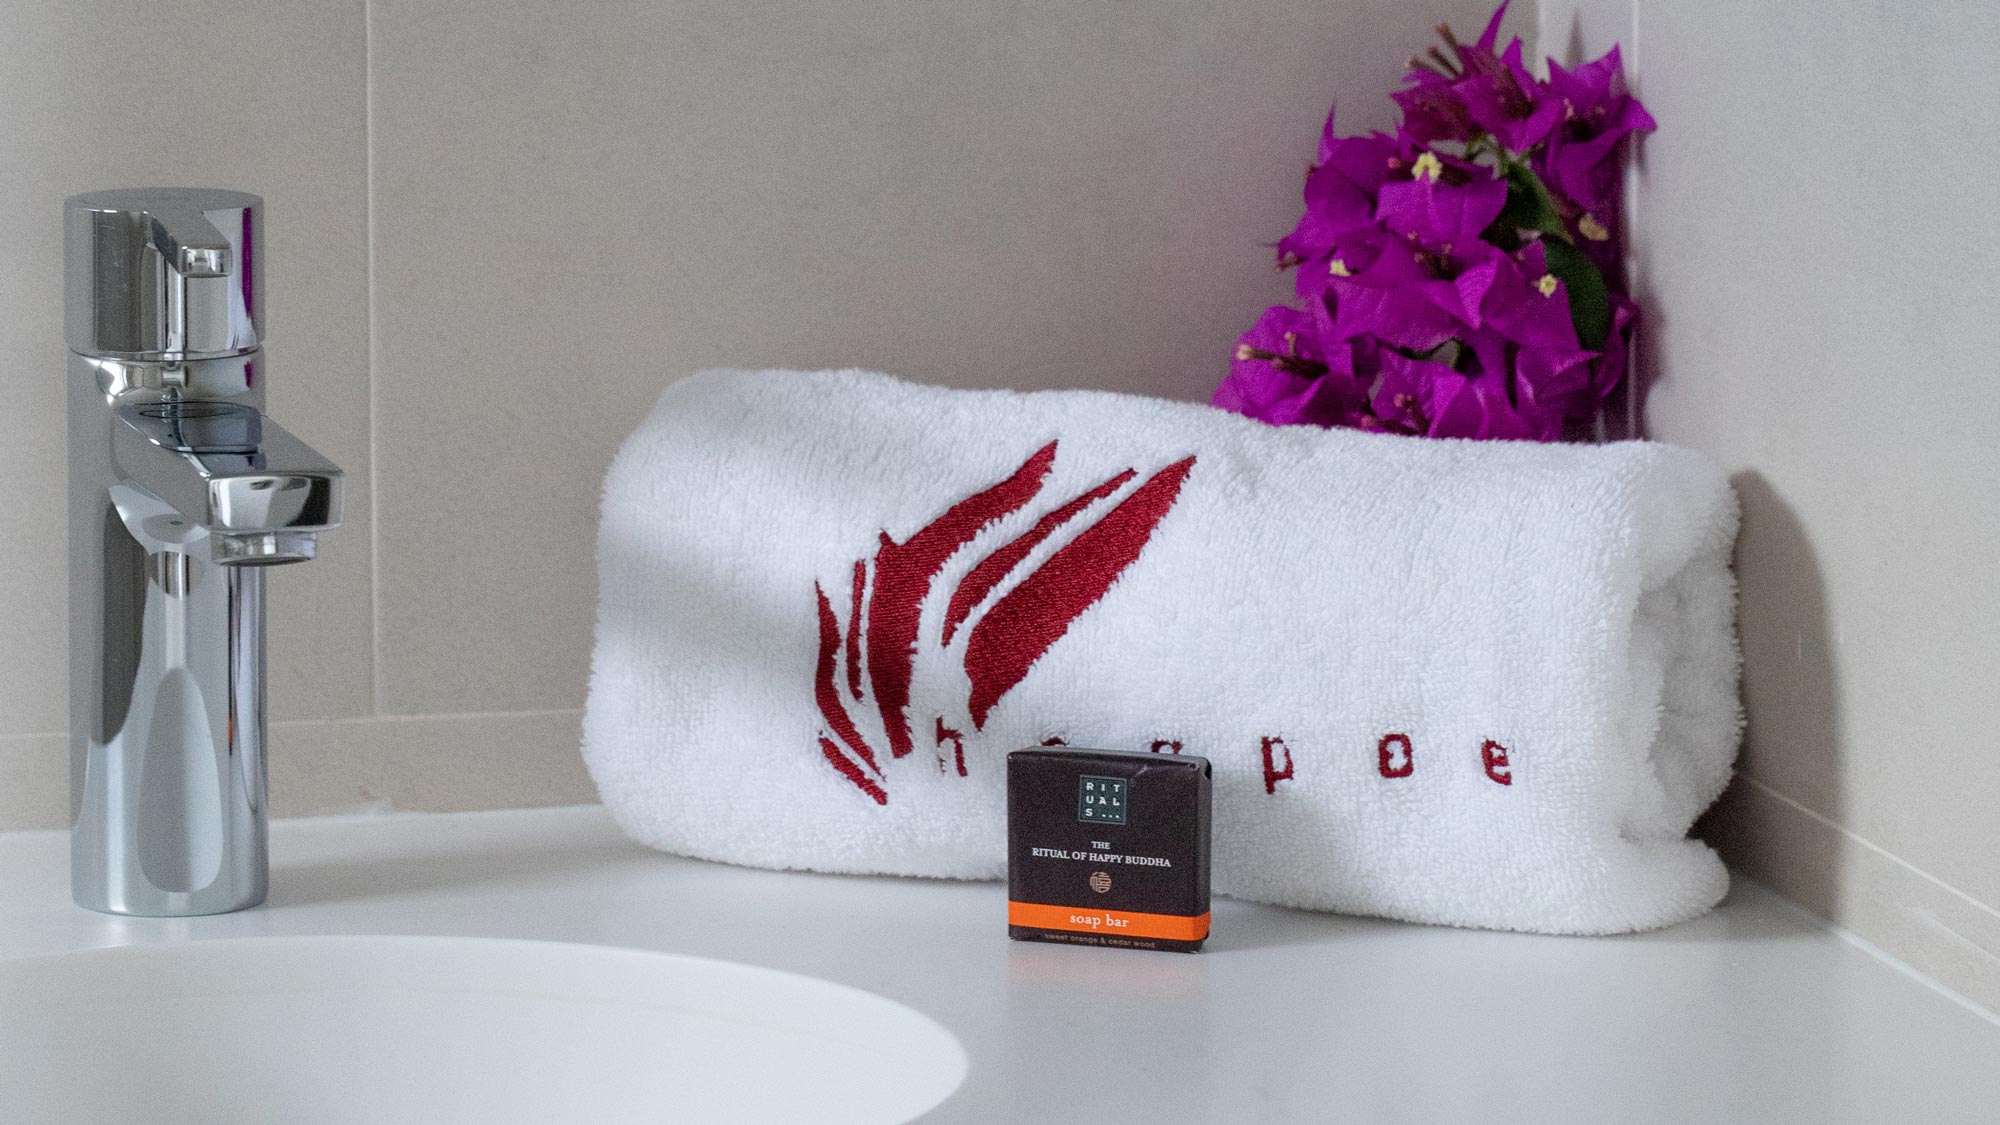 hoopoe-villas-lanzarote-spain-towel-soap